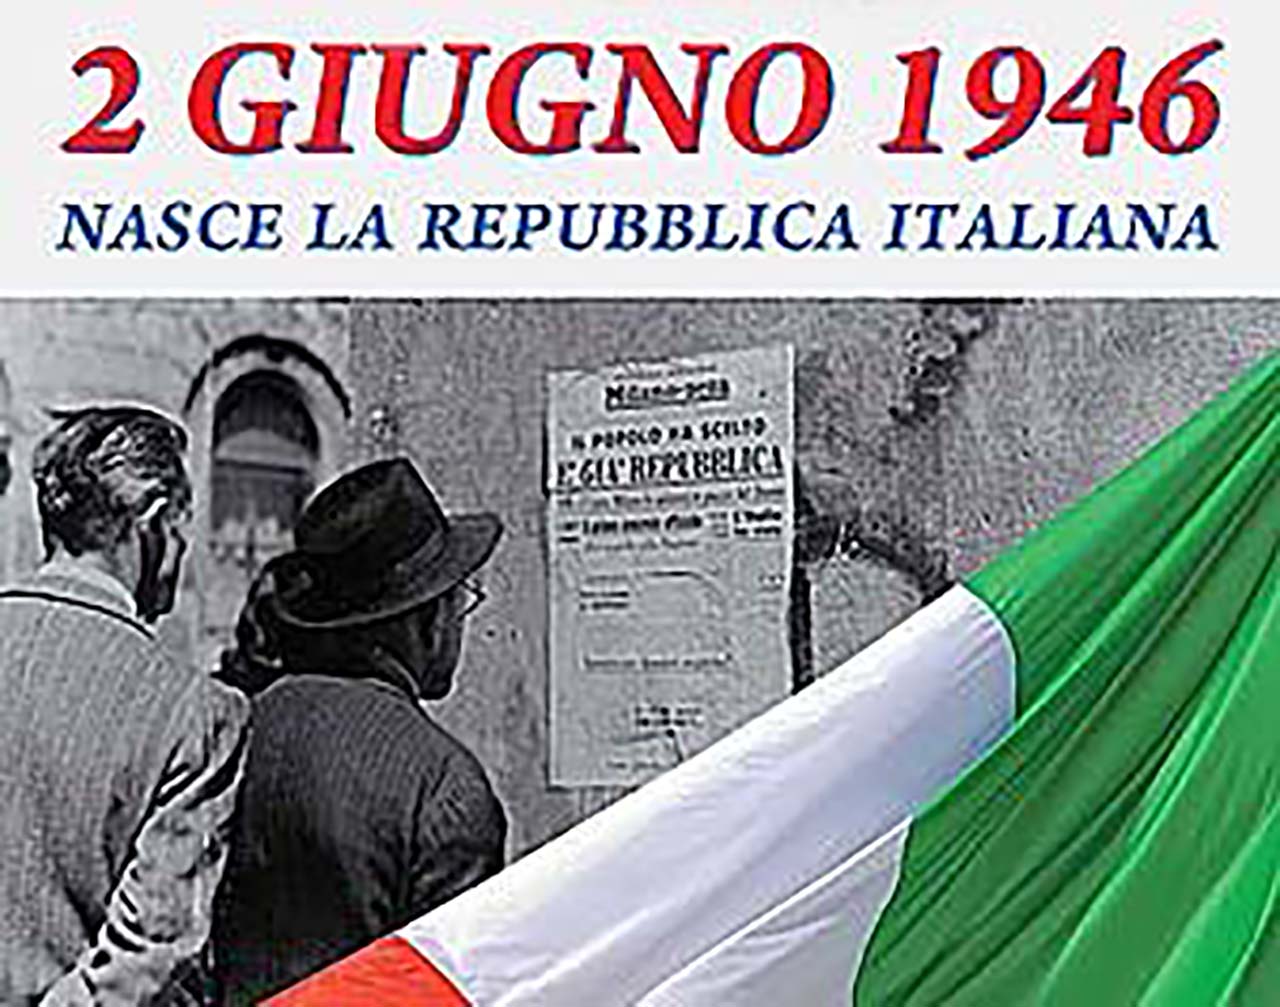 IL 2 GIUGNO 1946 NASCE LA REPUBBLICA ITALIANA